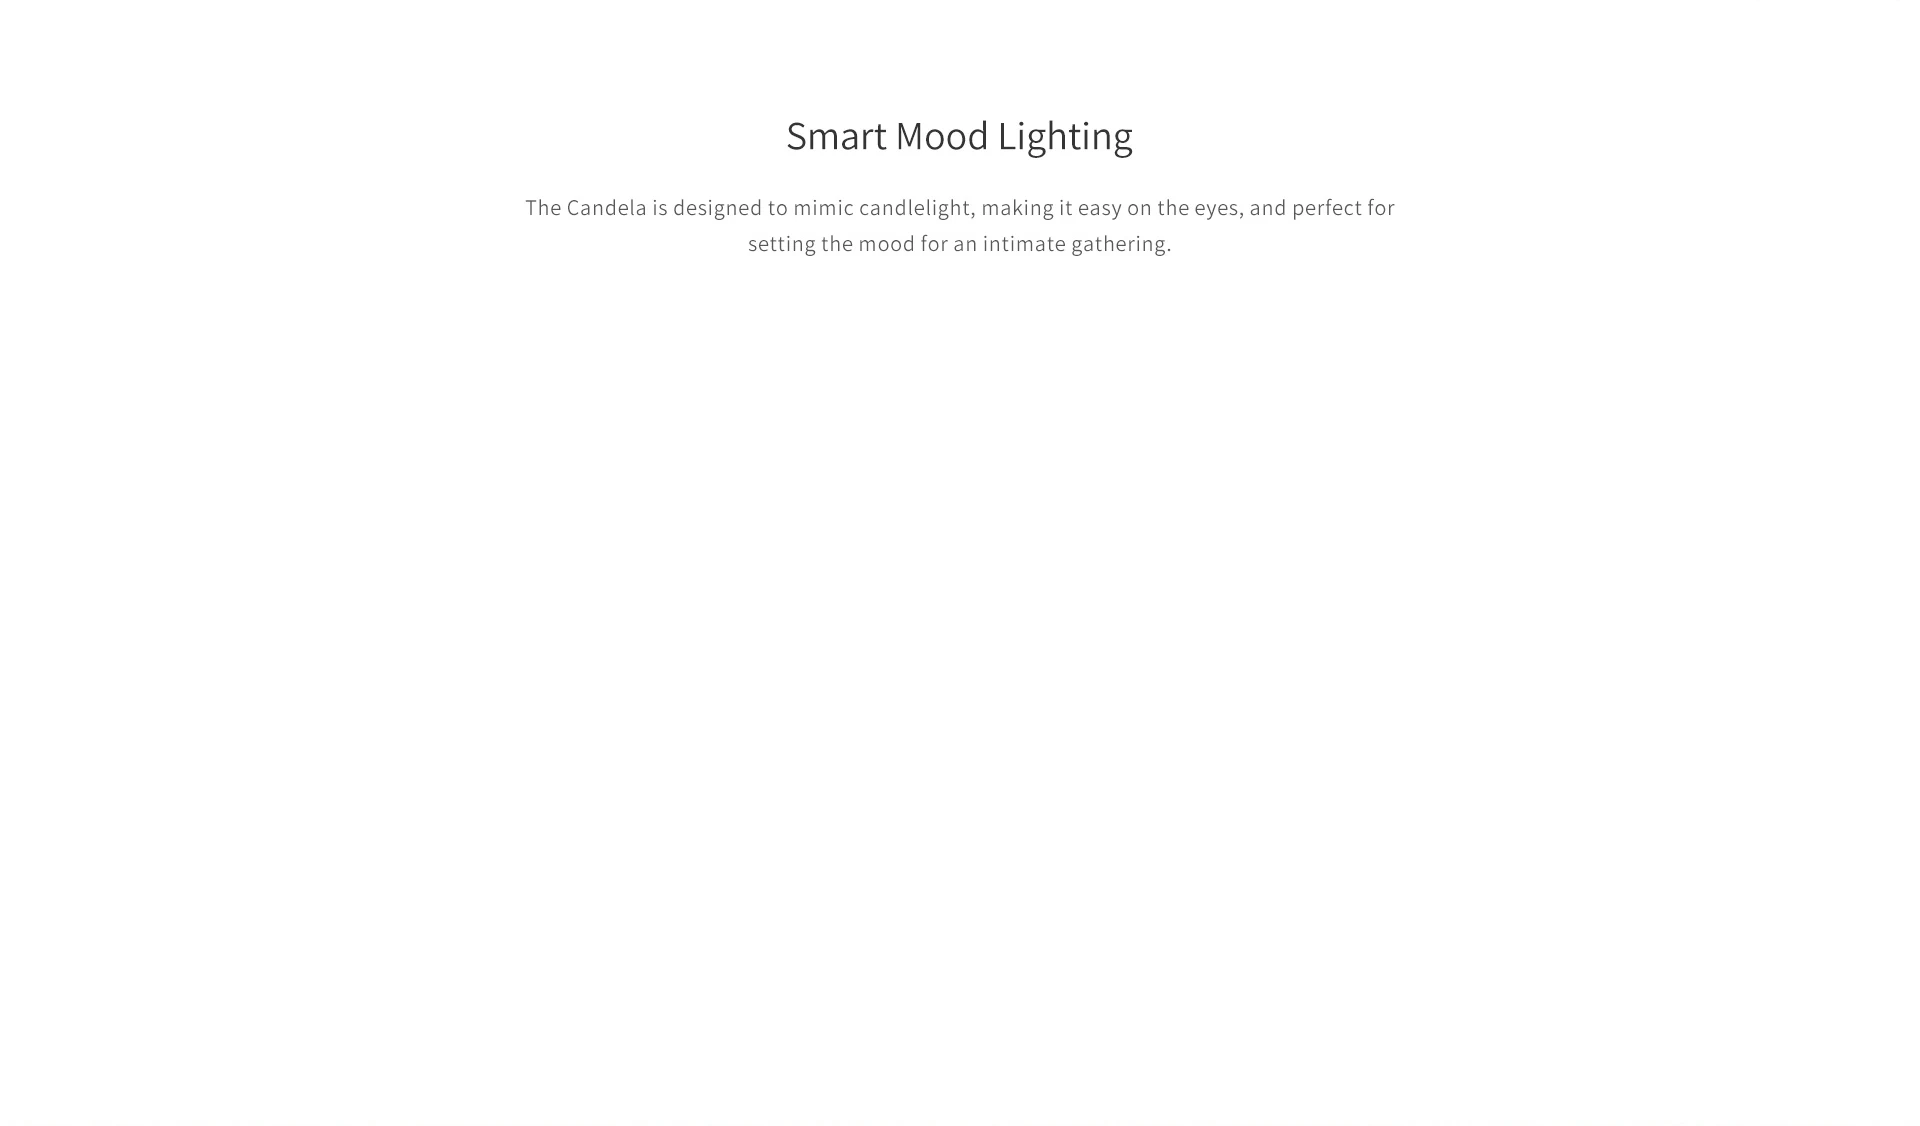 Xiaomi YEE светильник Candela умный контроль светодиодный ночной Светильник Горячий mi jia tmosphere светильник для mi home app, xiaomi Smart home комплекты